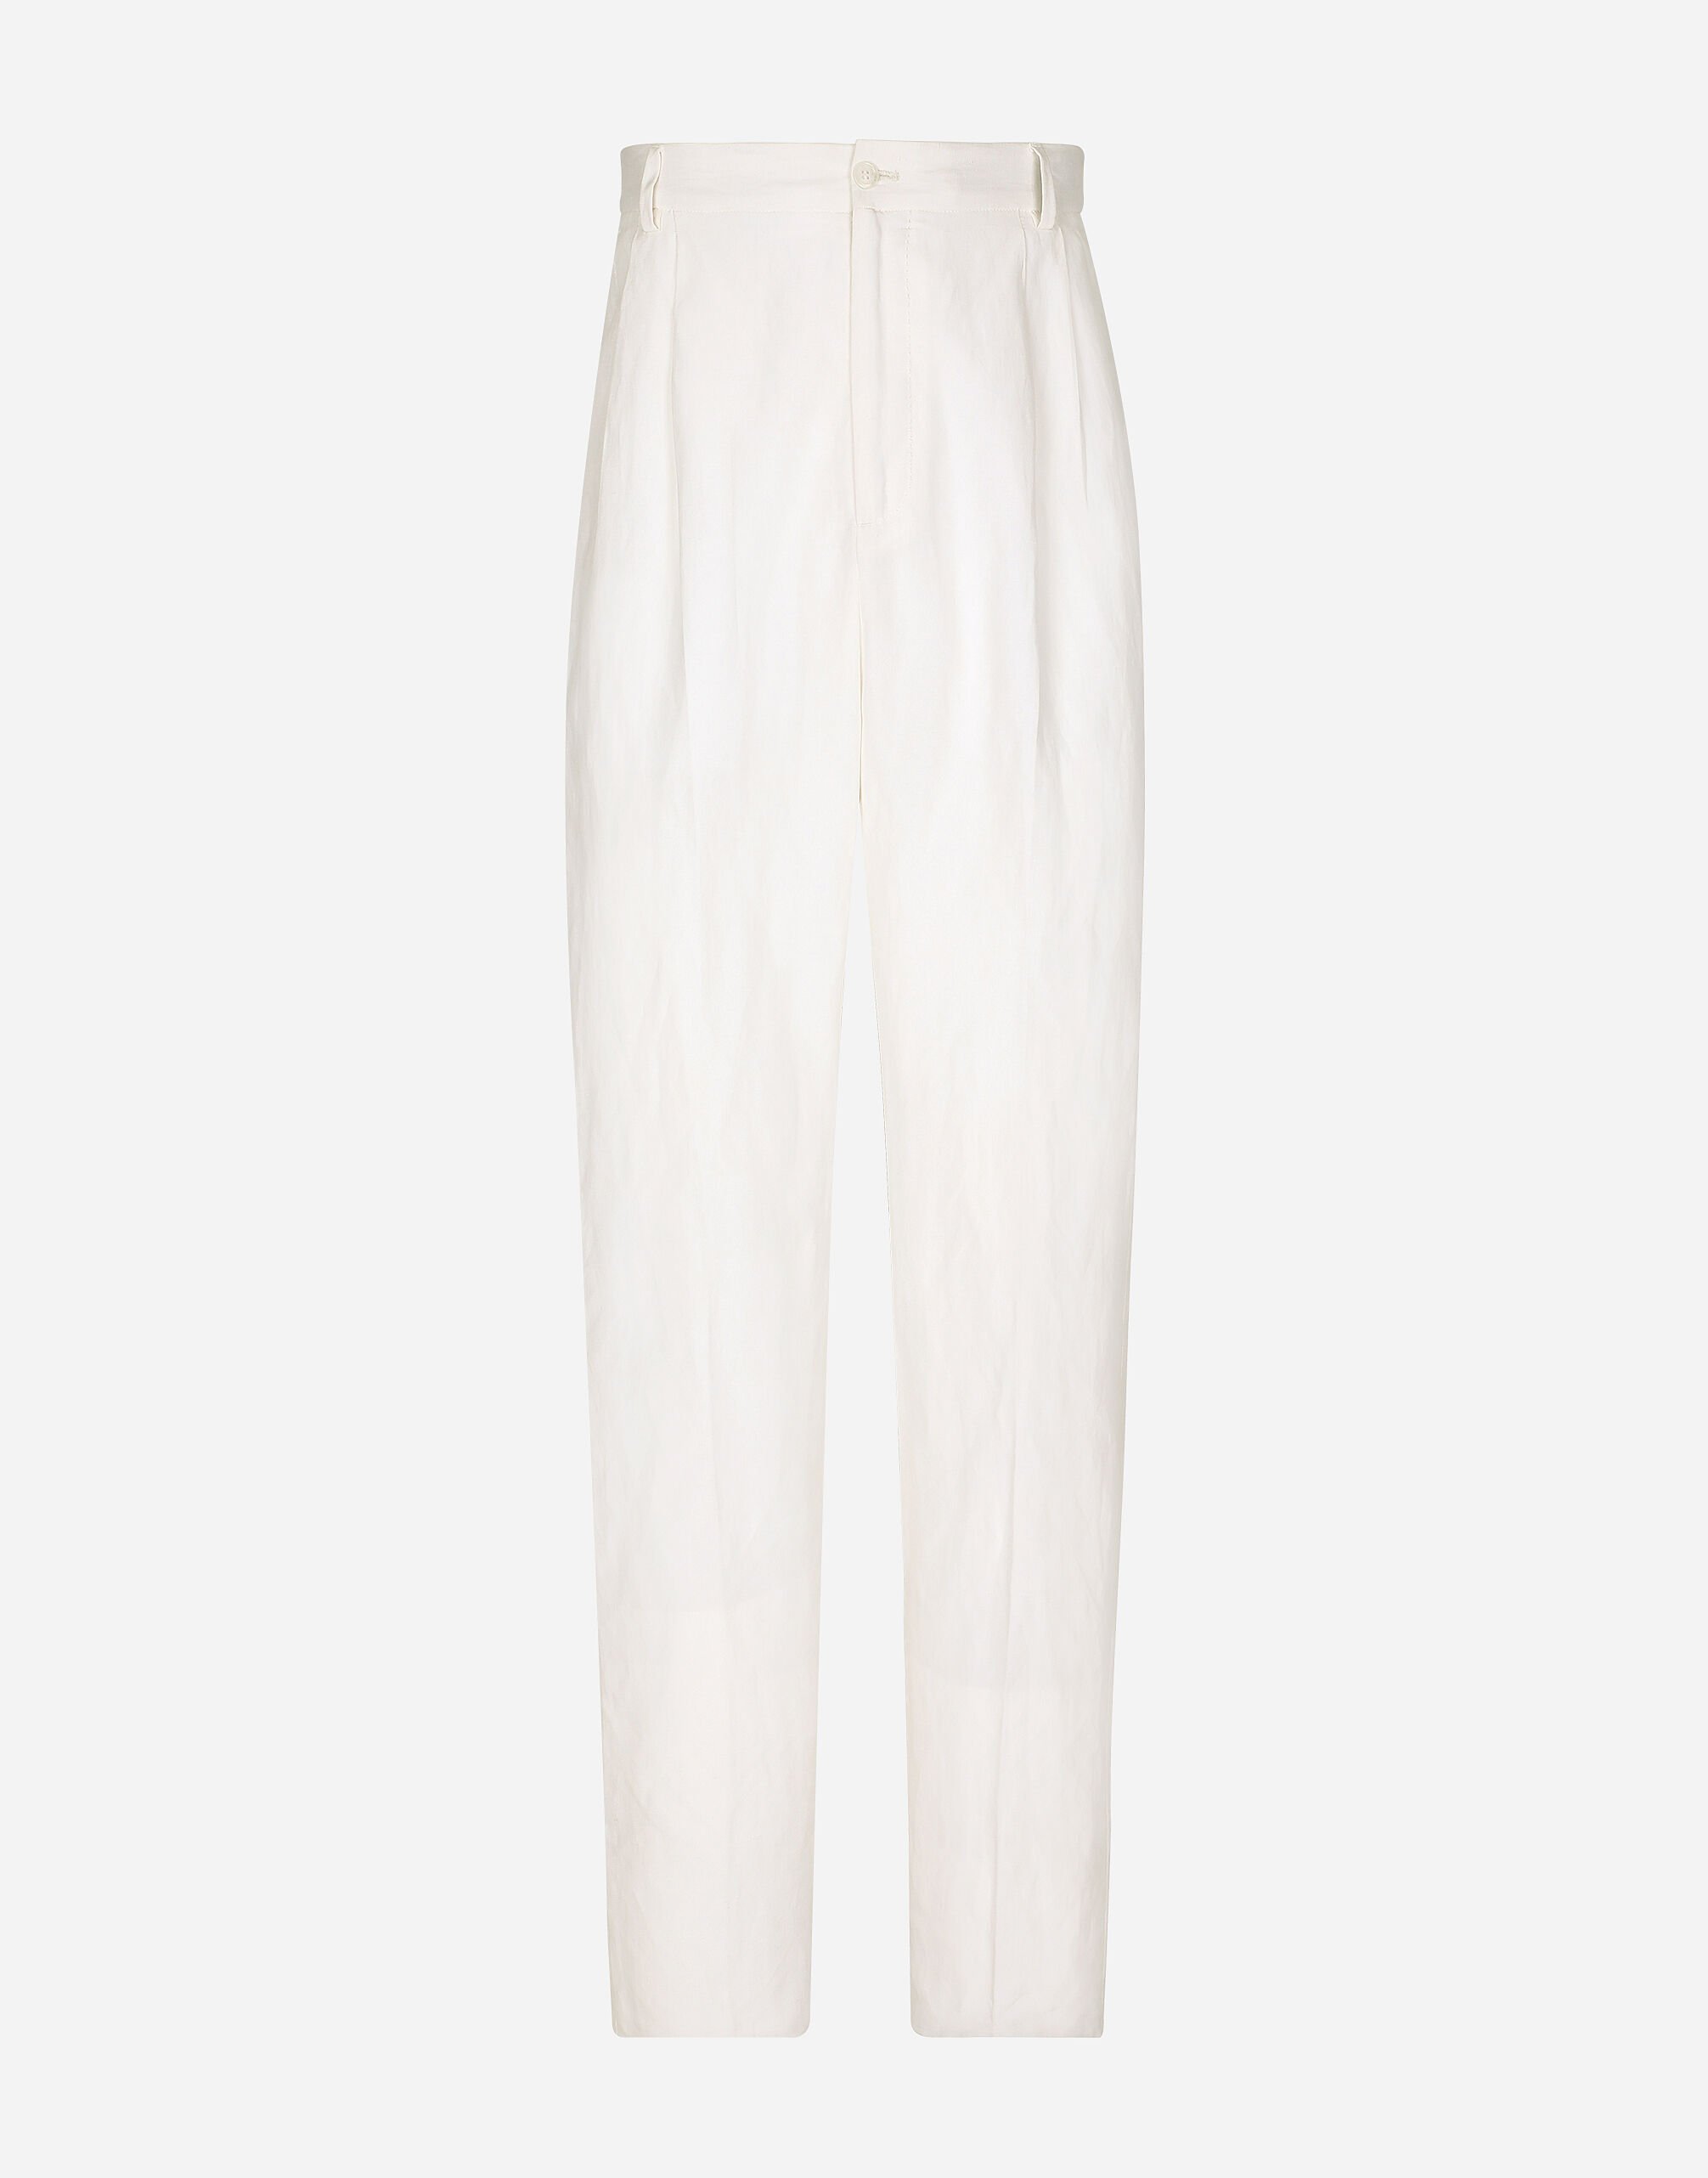 Dolce & Gabbana سروال محبوك من كتان وحرير أبيض VG4444VP287